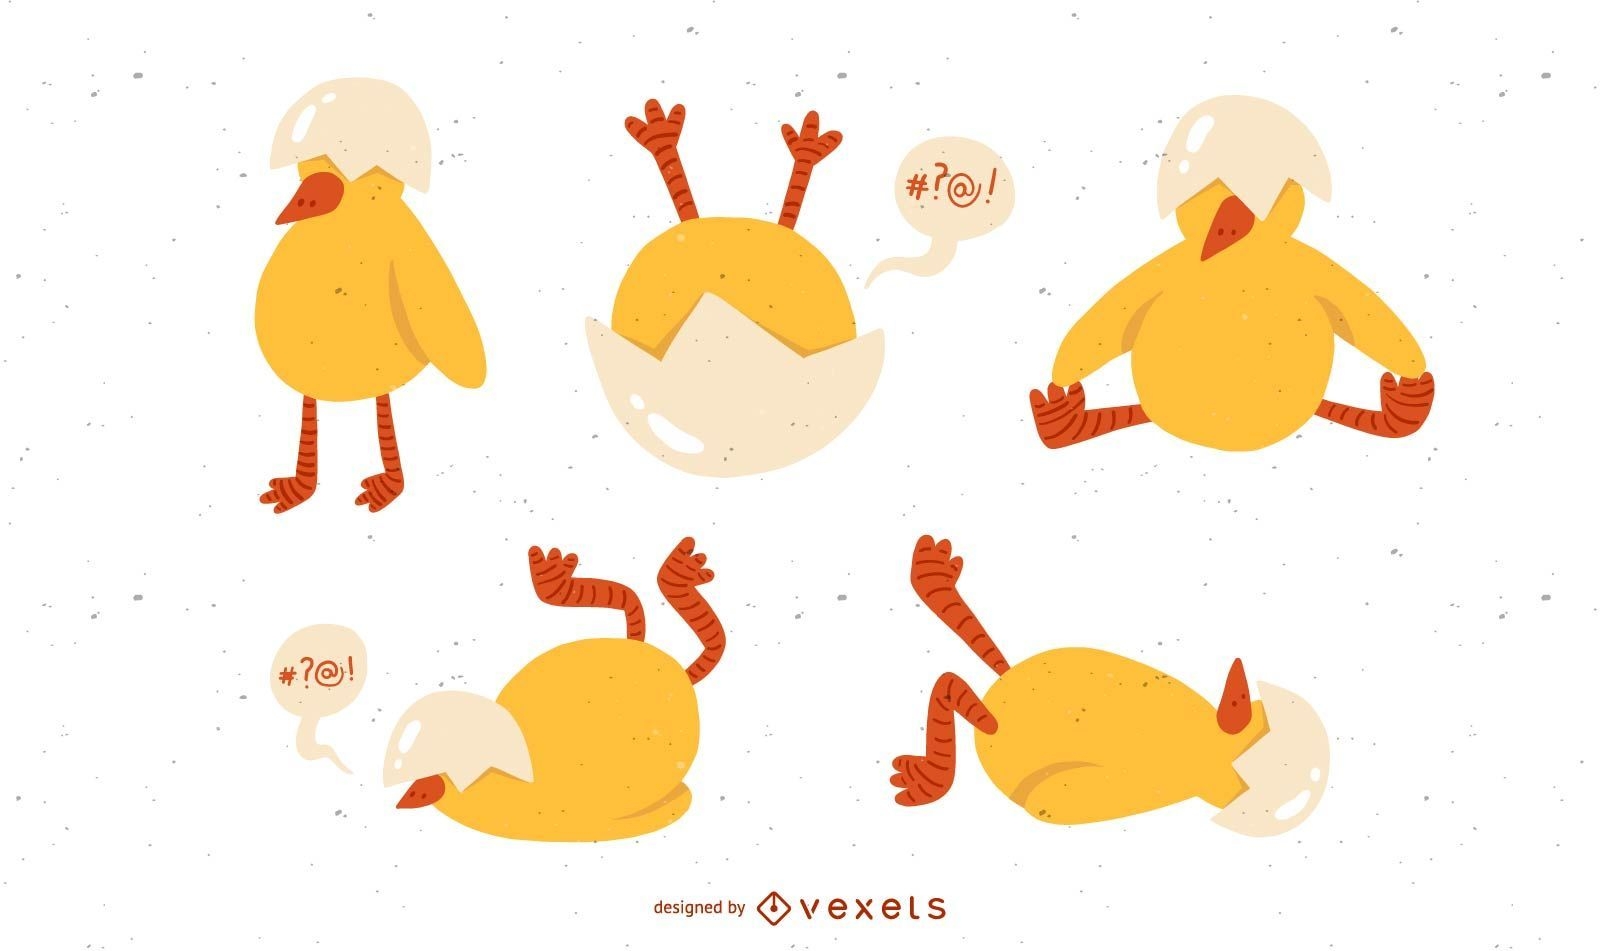 Cute chicken illustration set